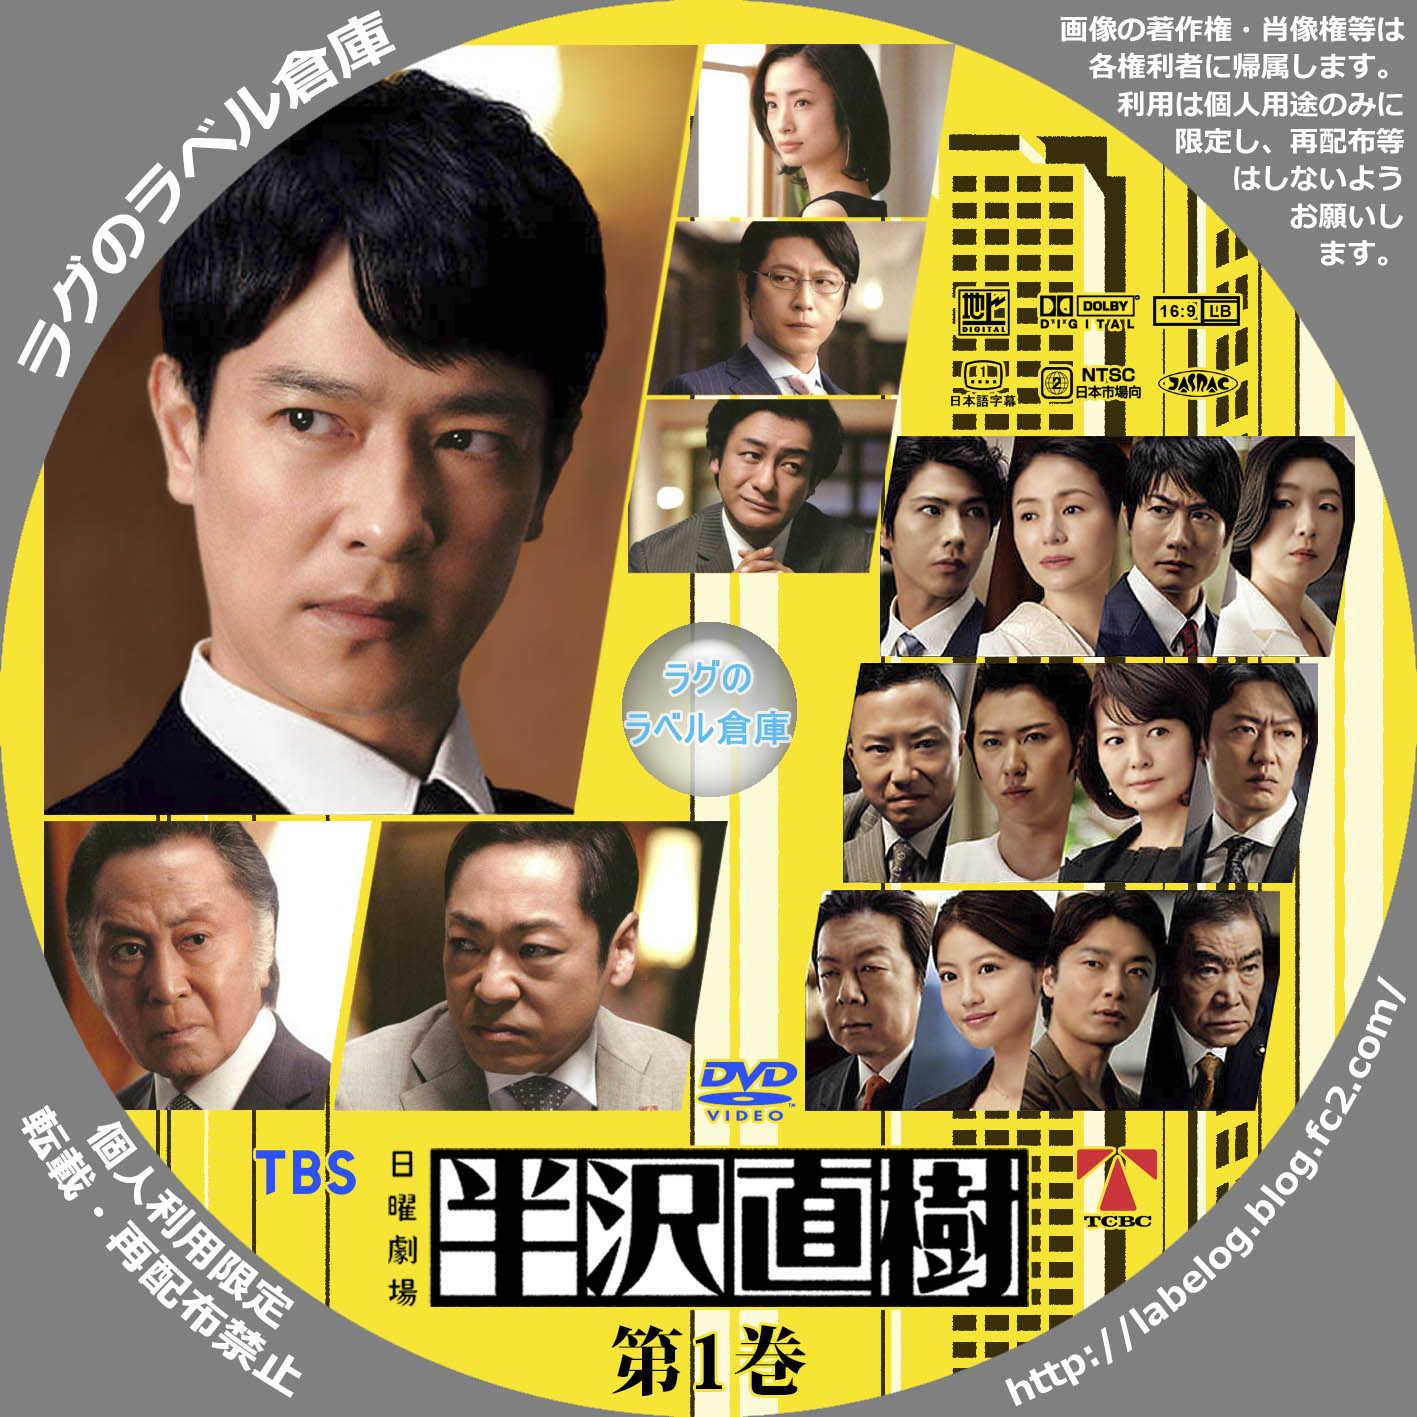 半沢直樹(2020年版)-ディレクターズカット版- DVD-BOX〈7枚組〉